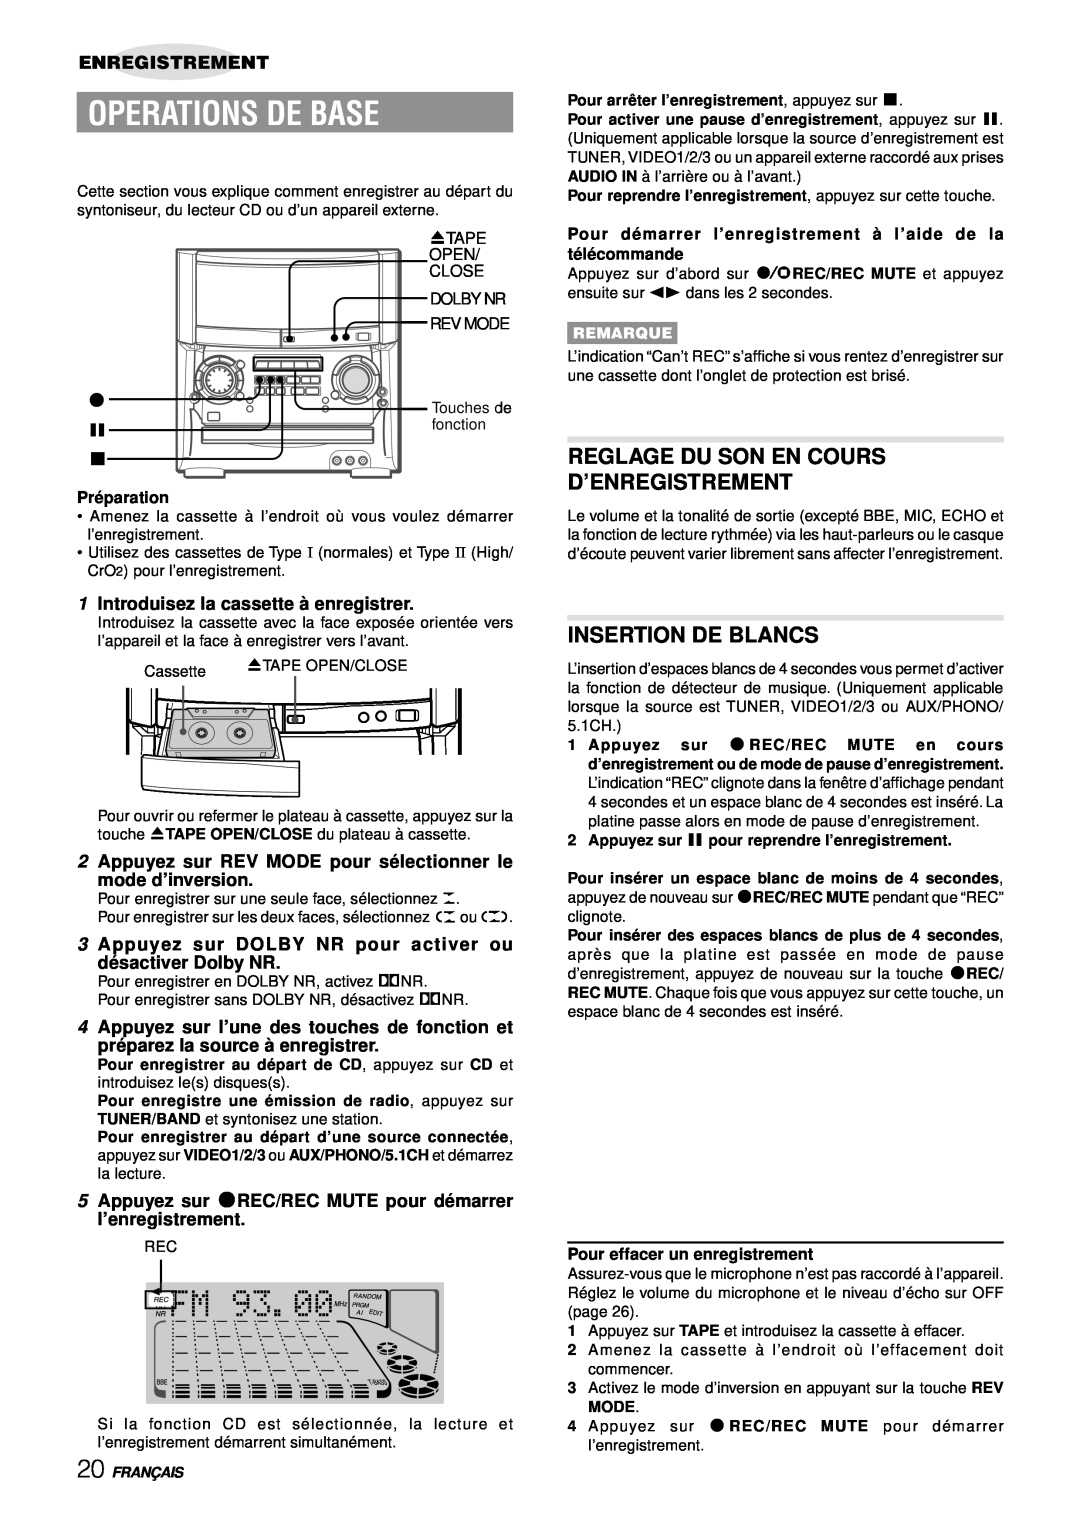 Aiwa XH-A1000 Reglage Du Son En Cours D’Enregistrement, Insertion De Blancs, 1Introduisez la cassette à enregistrer, zTAPE 